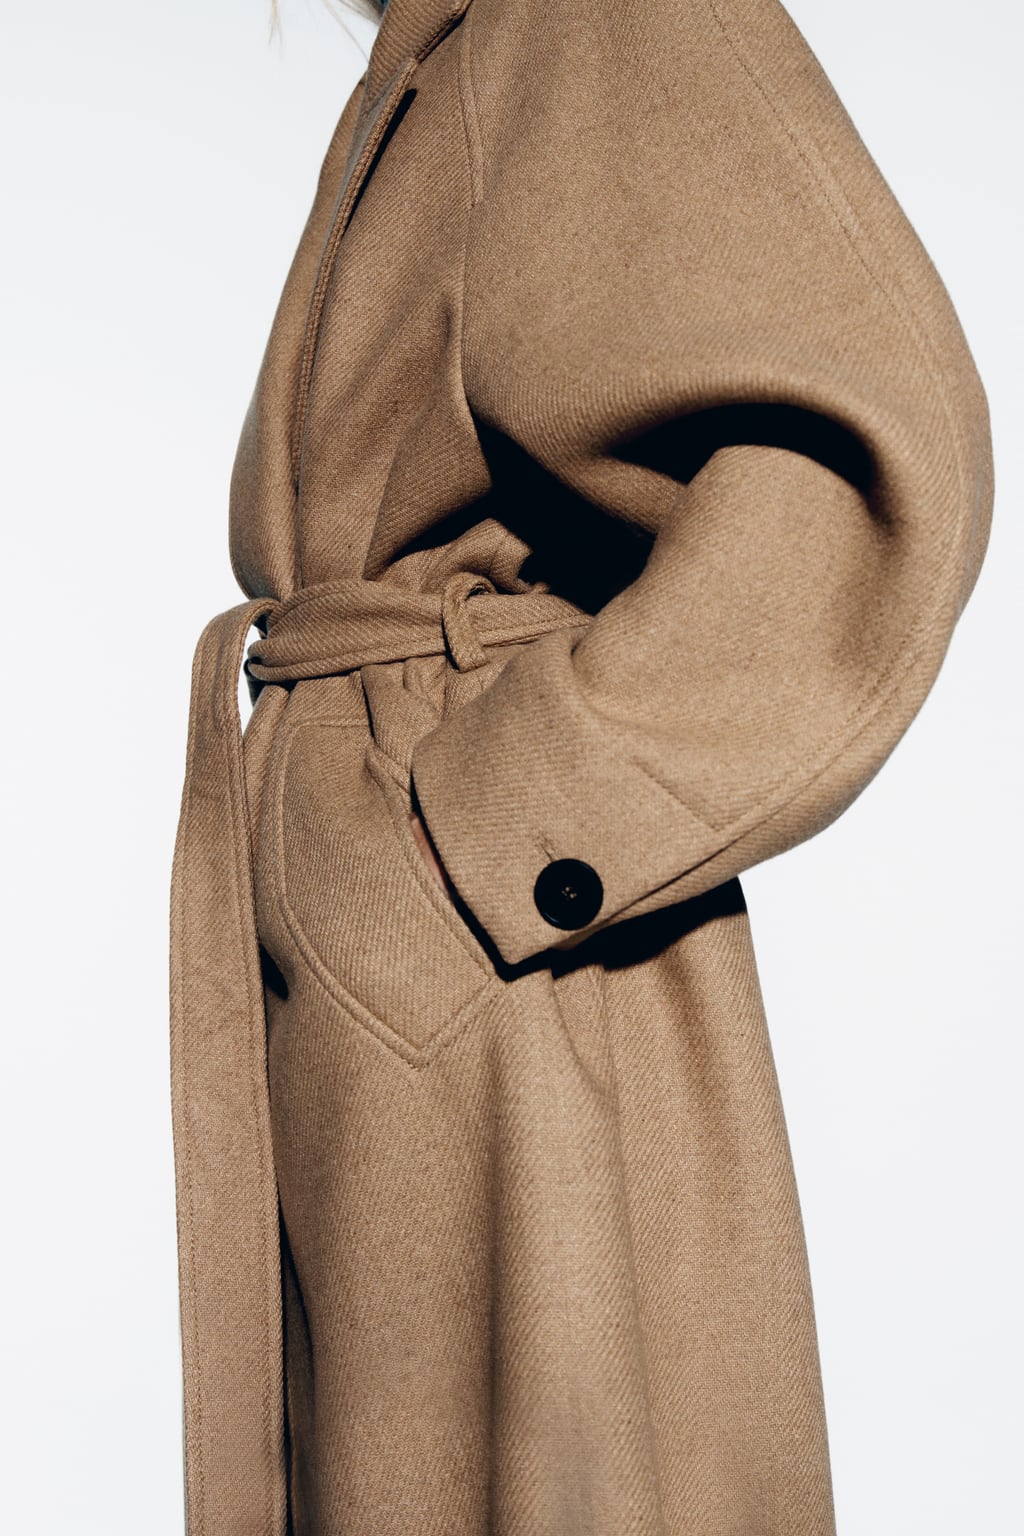 Longline belted wool coat